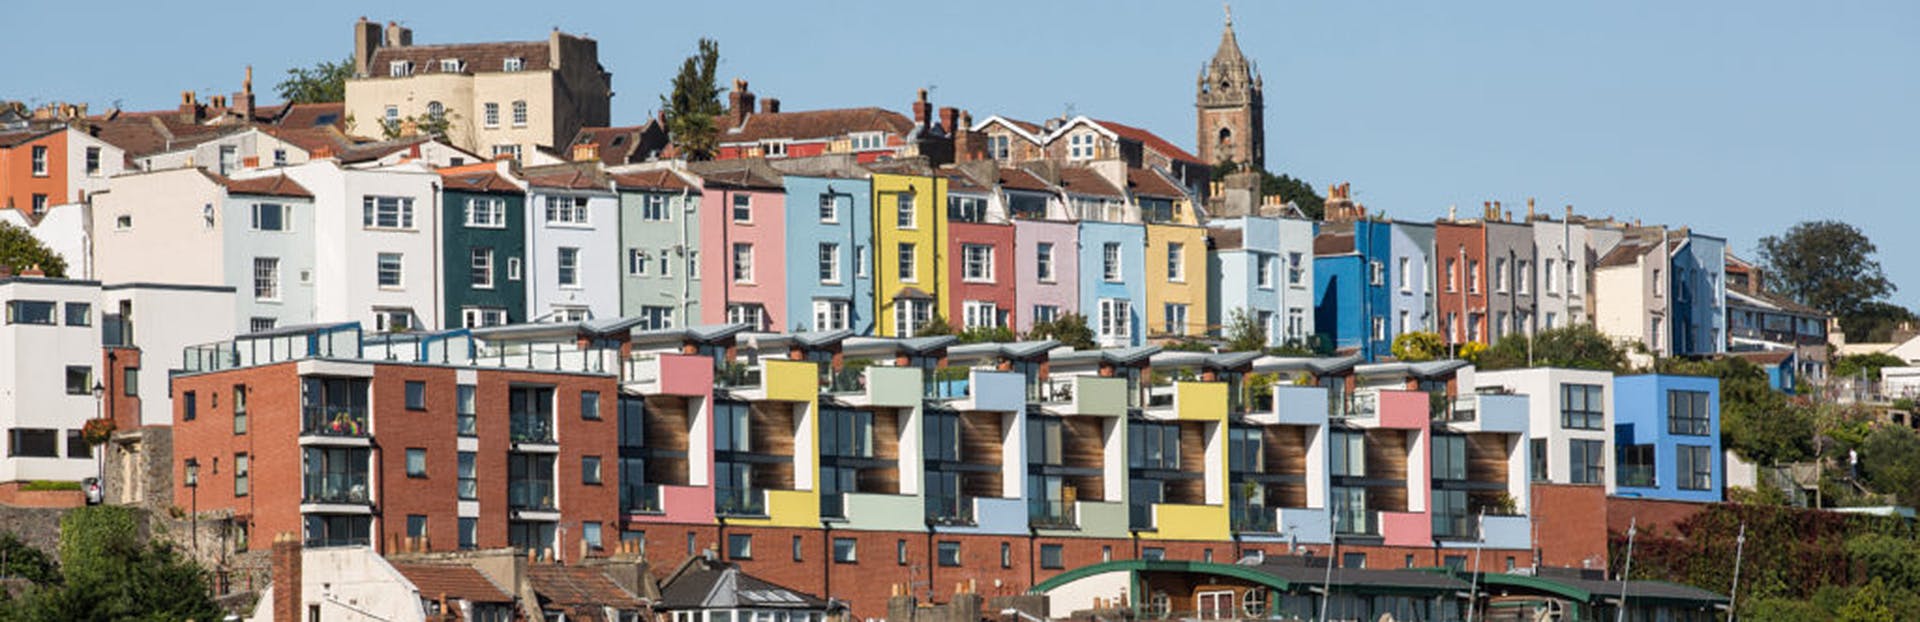 Explore o melhor da Cidade Velha de Bristol em uma excursão autoguiada em áudio